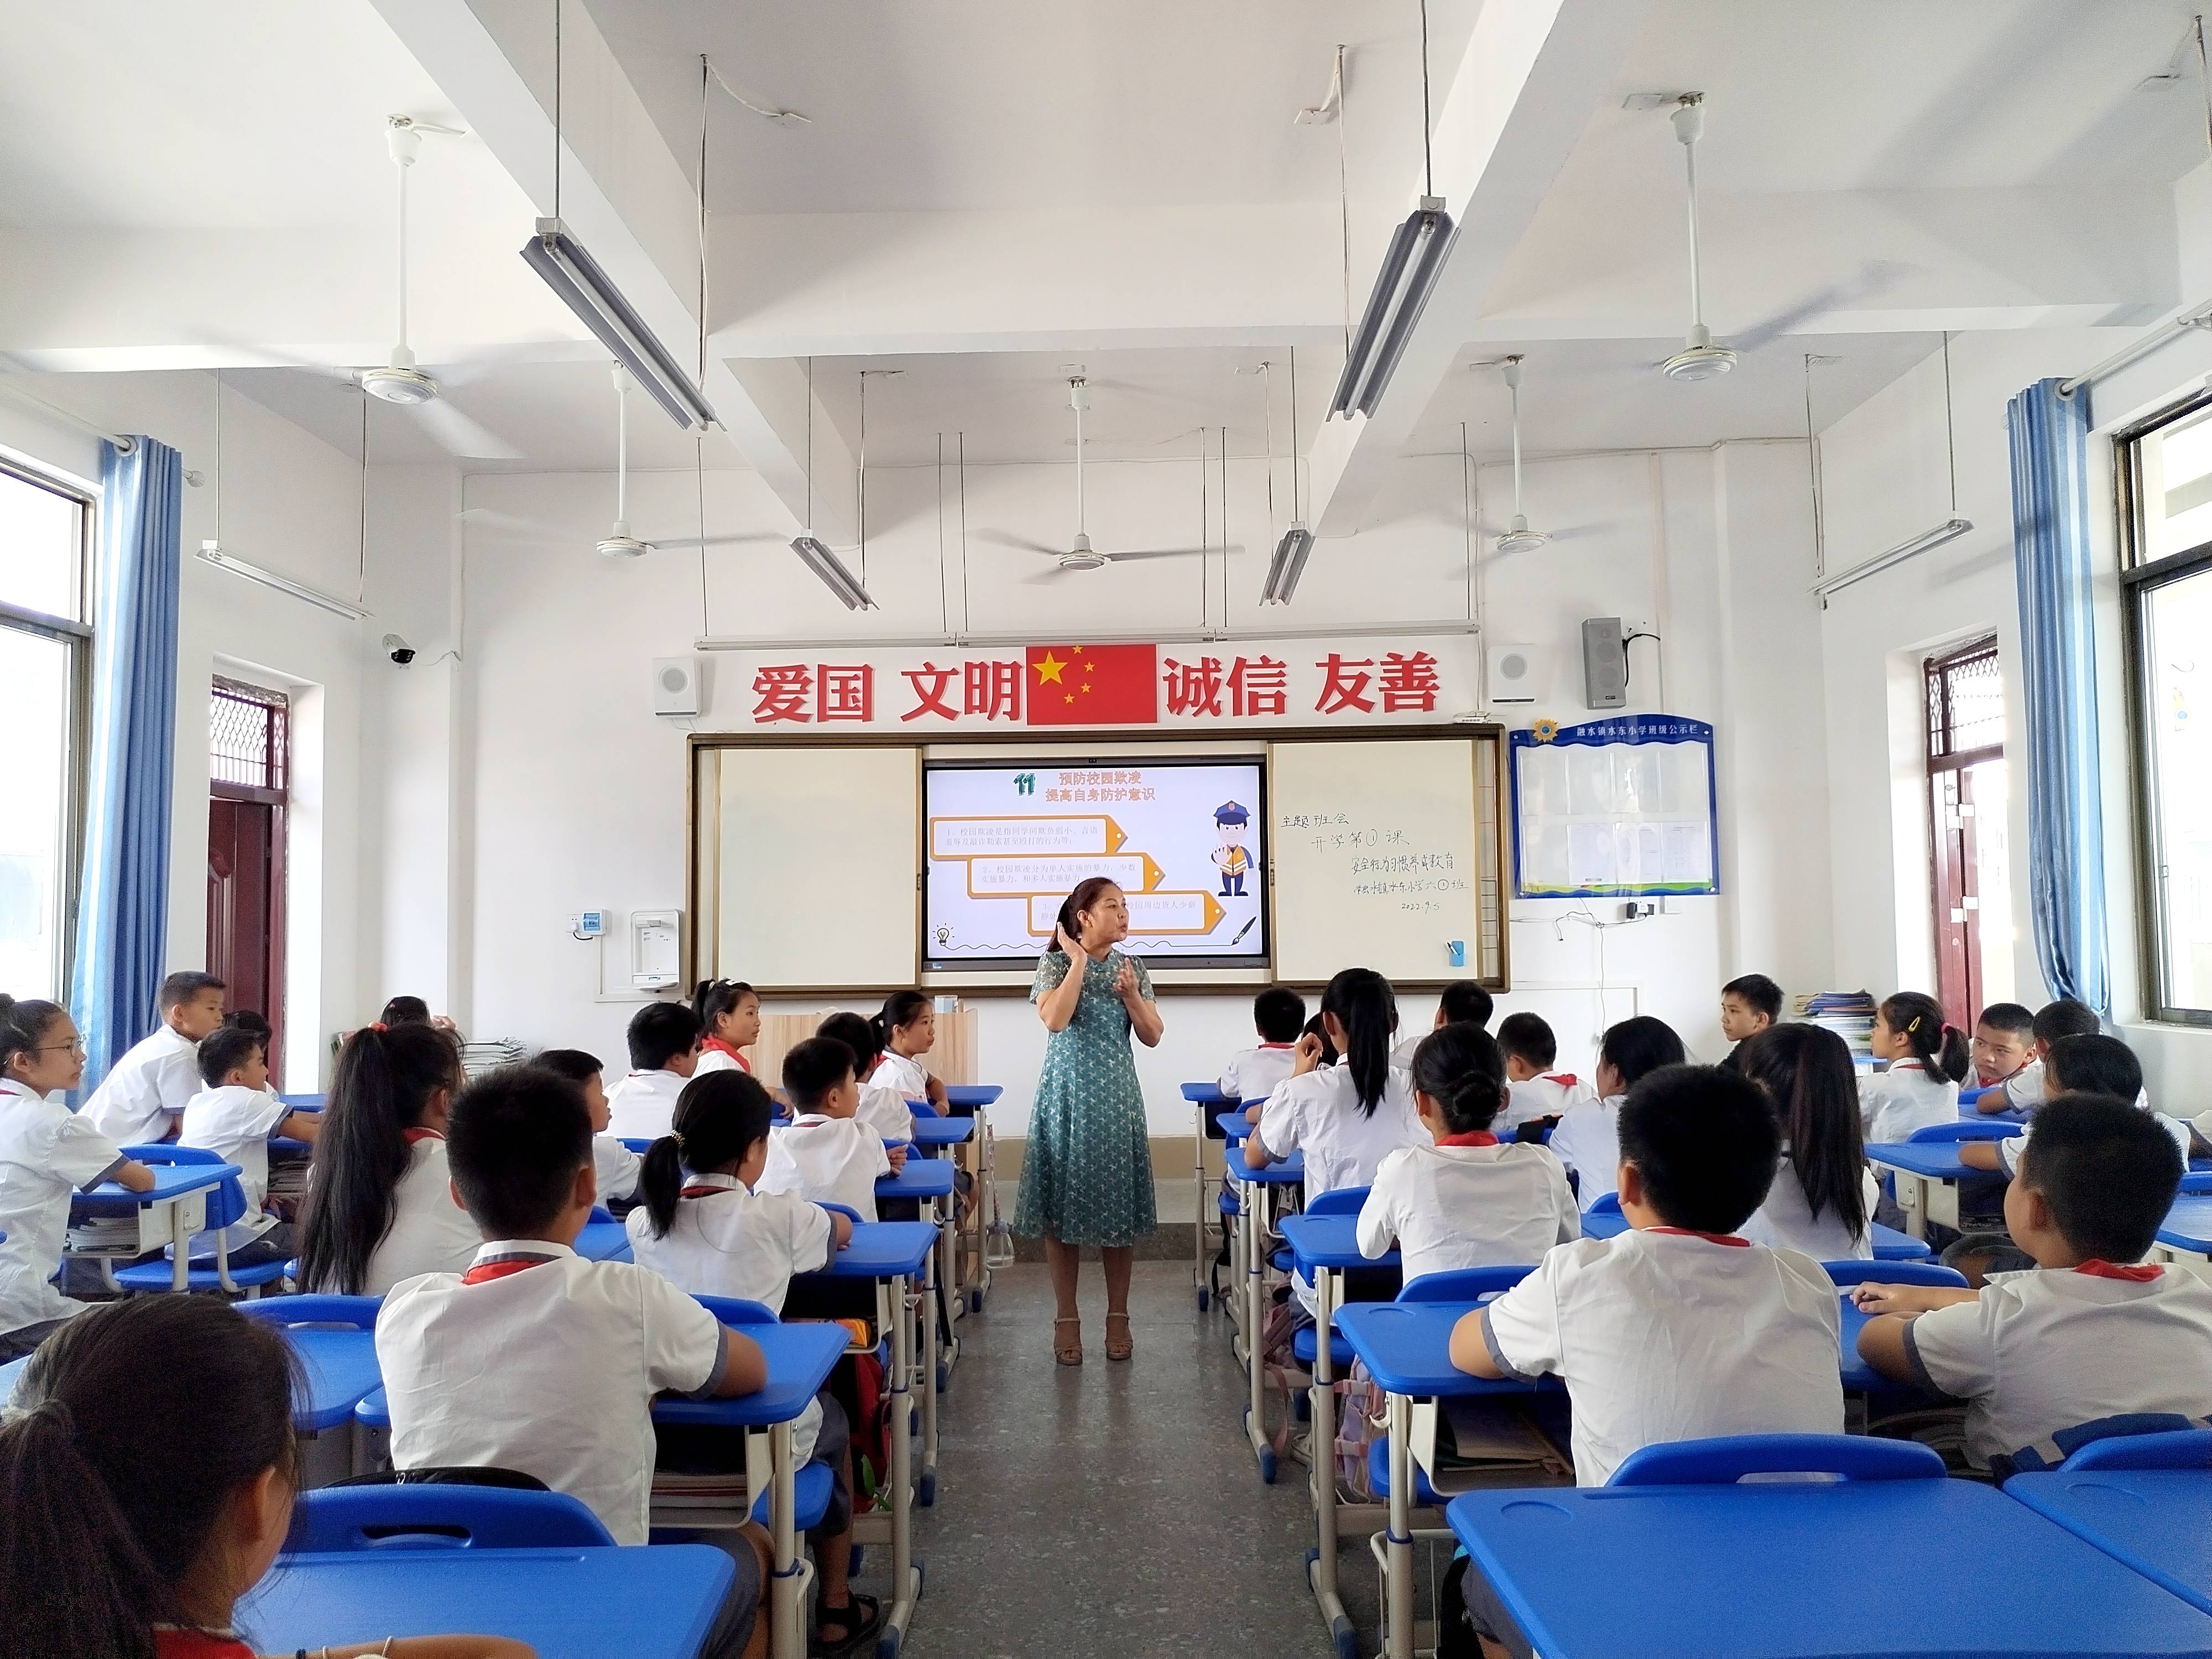 5.水东小学的同学们在配备有钢塑课桌椅和教学一体机的教室上课。.jpg